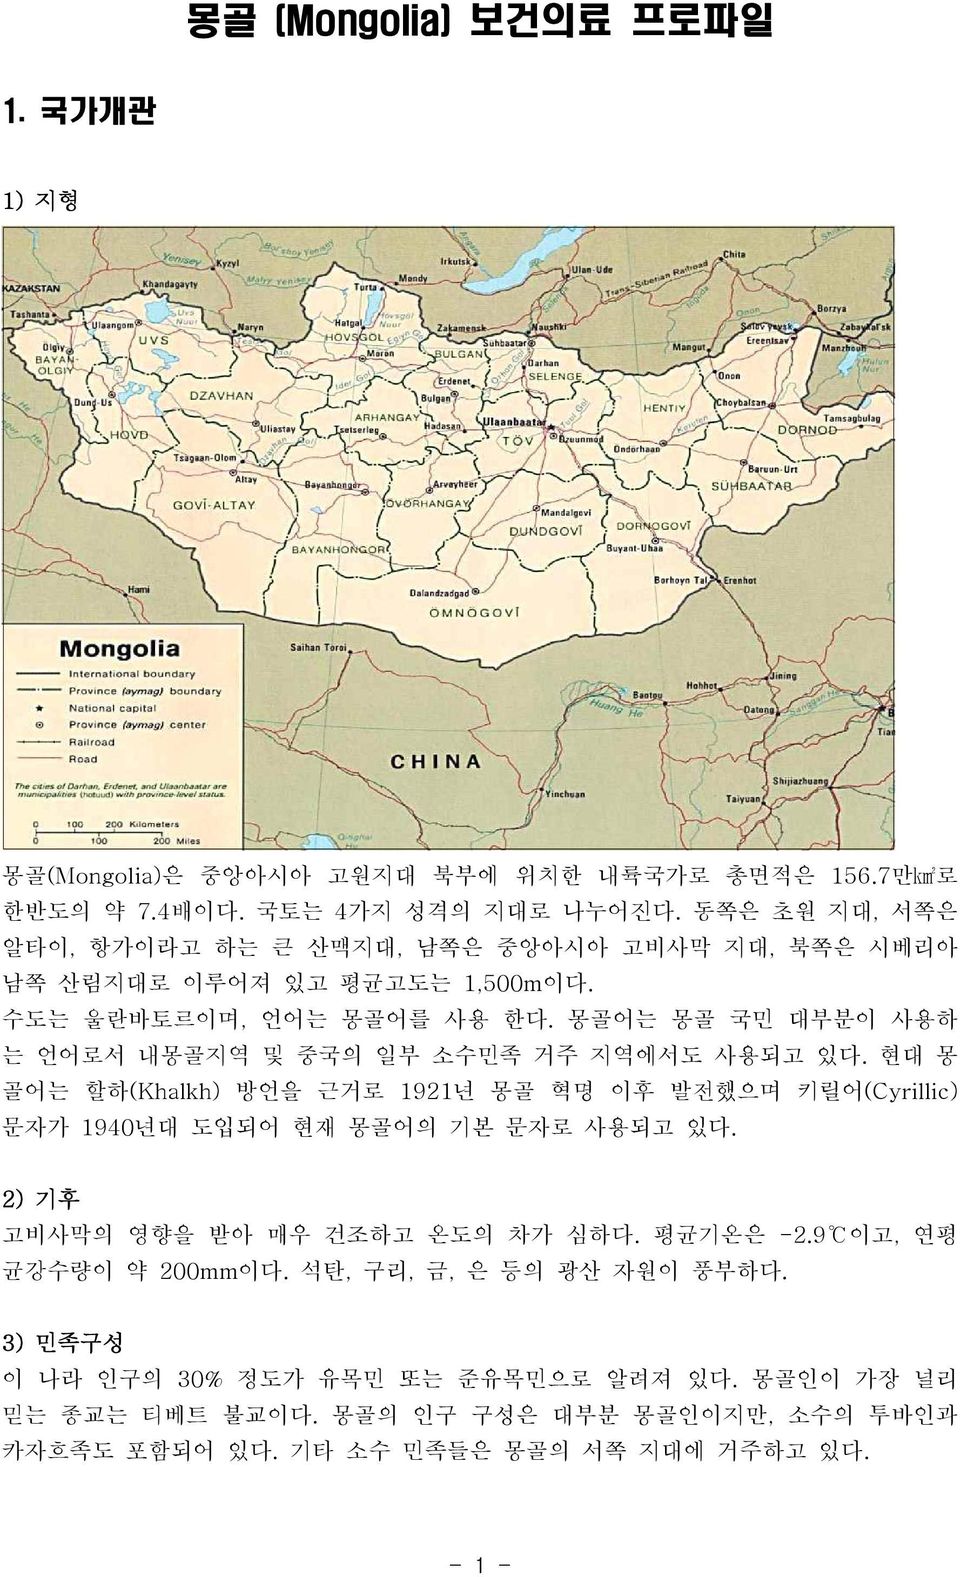 몽골어는 몽골 국민 대부분이 사용하 는 언어로서 내몽골지역 및 중국의 일부 소수민족 거주 지역에서도 사용되고 있다. 현대 몽 골어는 할하(Khalkh) 방언을 근거로 1921년 몽골 혁명 이후 발전했으며 키릴어(Cyrillic) 문자가 1940년대 도입되어 현재 몽골어의 기본 문자로 사용되고 있다.